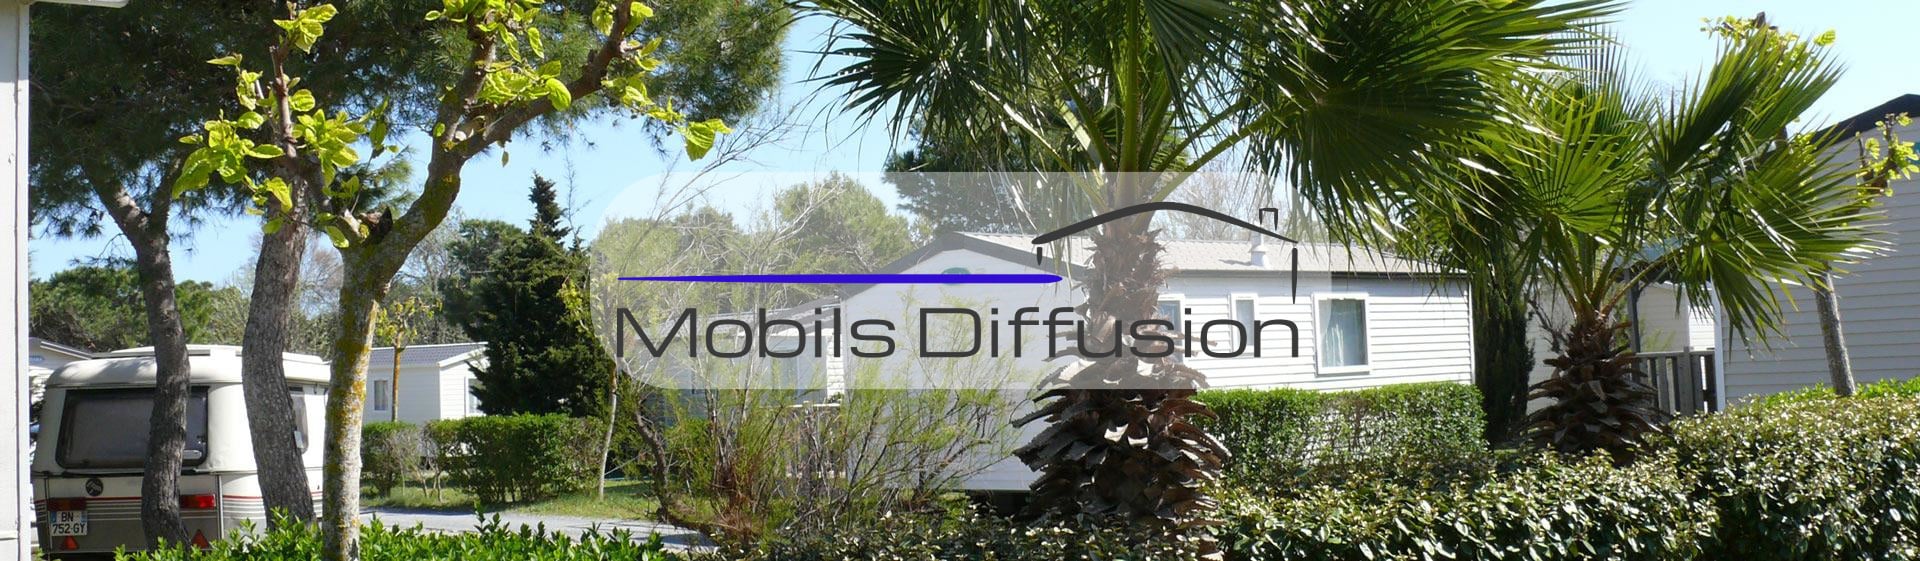 Mobils Diffusion - Terrain pour mobil-home en camping près de Narbonne